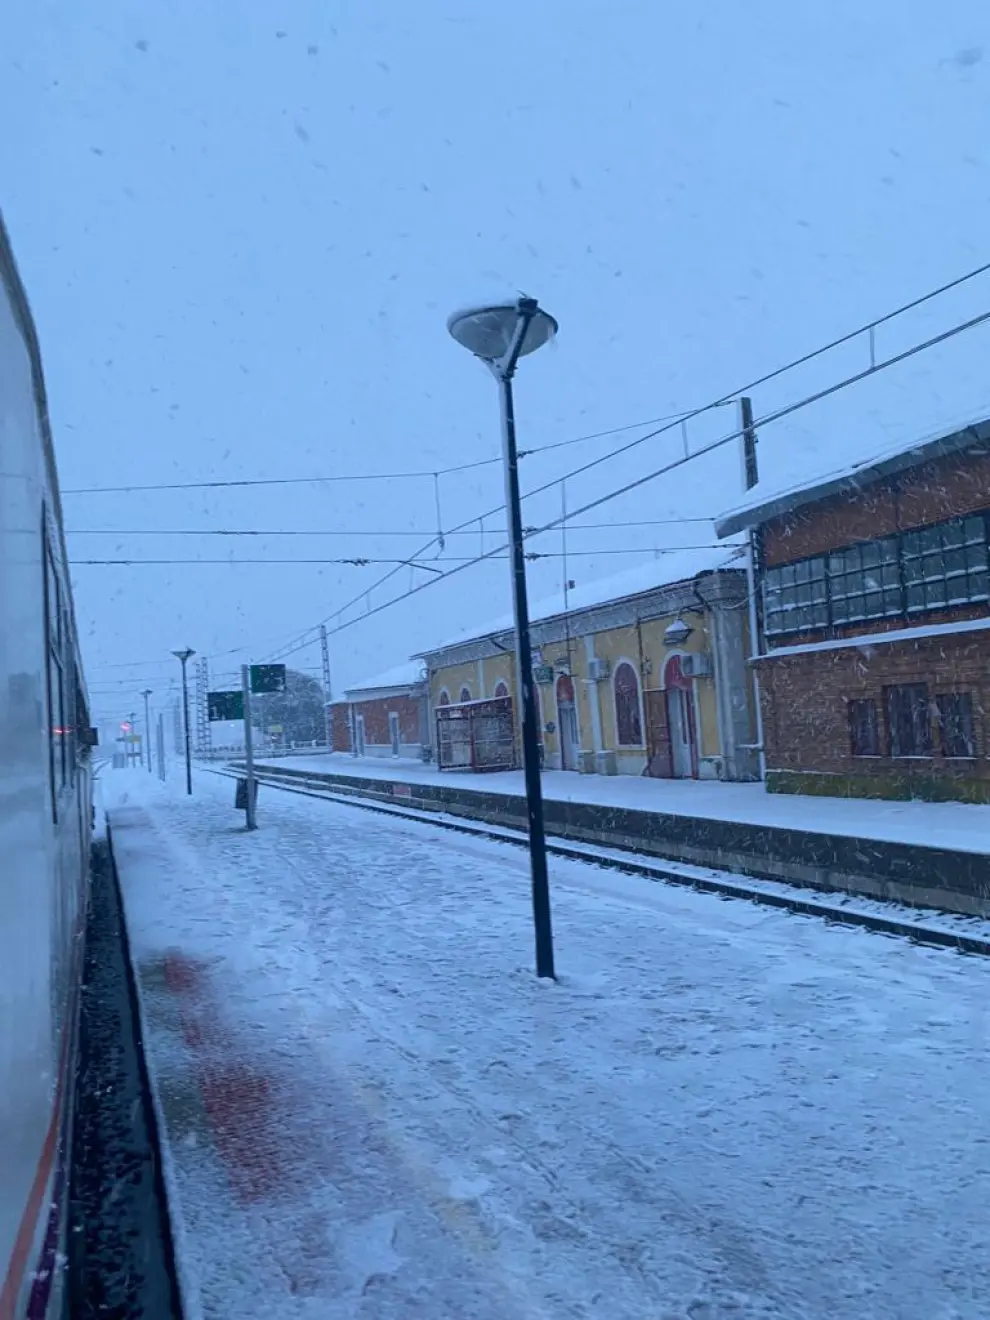 El tren se encuentra varado en Grisén rodeado de nieve sin ningún tipo de solución.